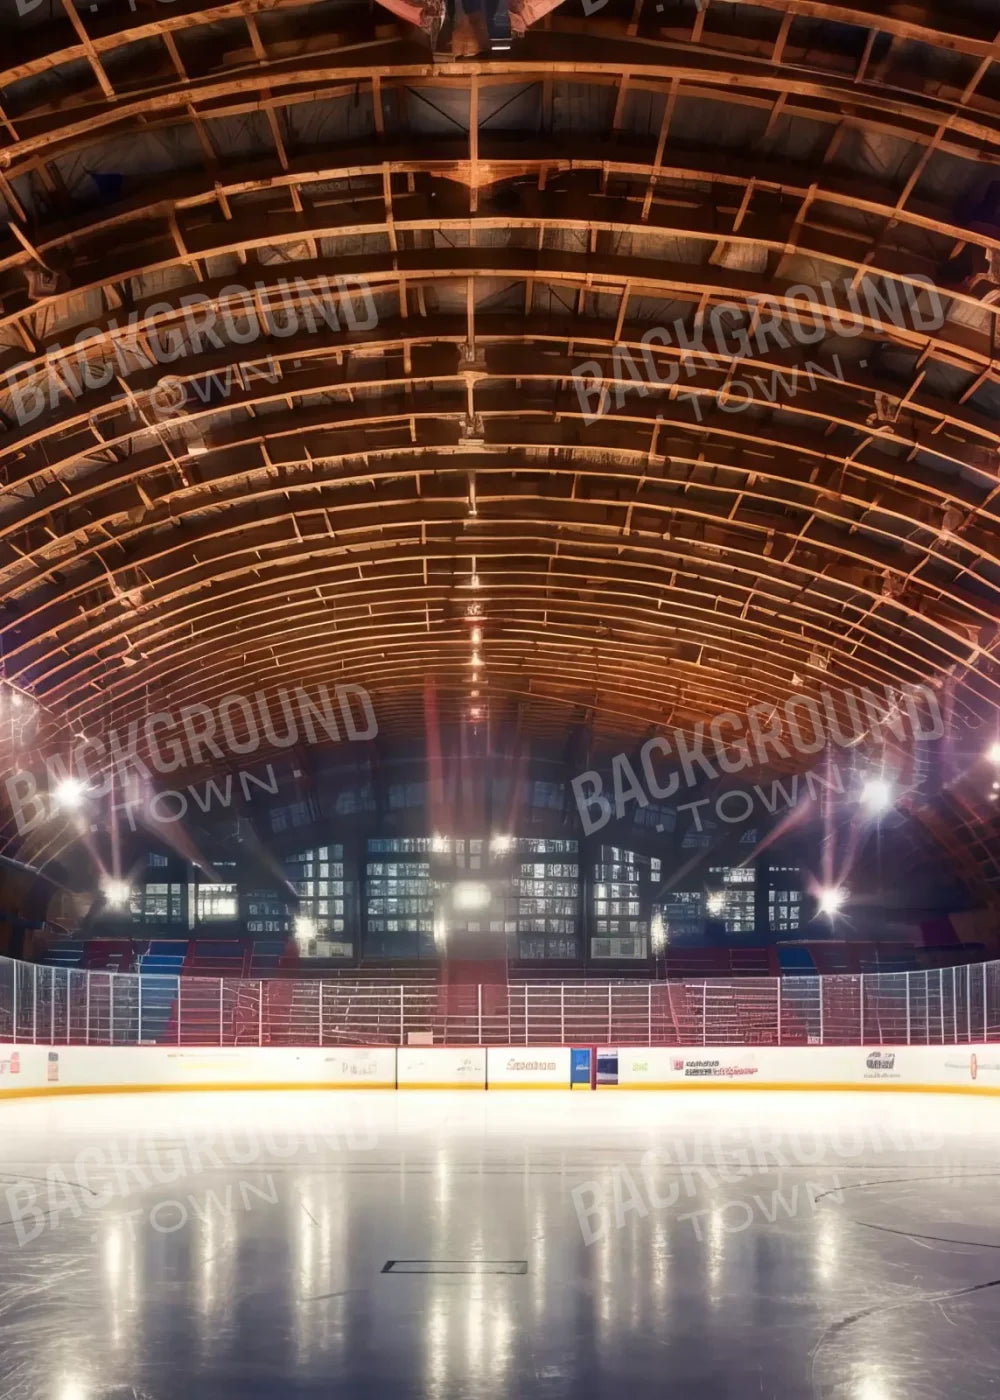 The Art Of Hockey Iii 5’X7’ Ultracloth (60 X 84 Inch) Backdrop